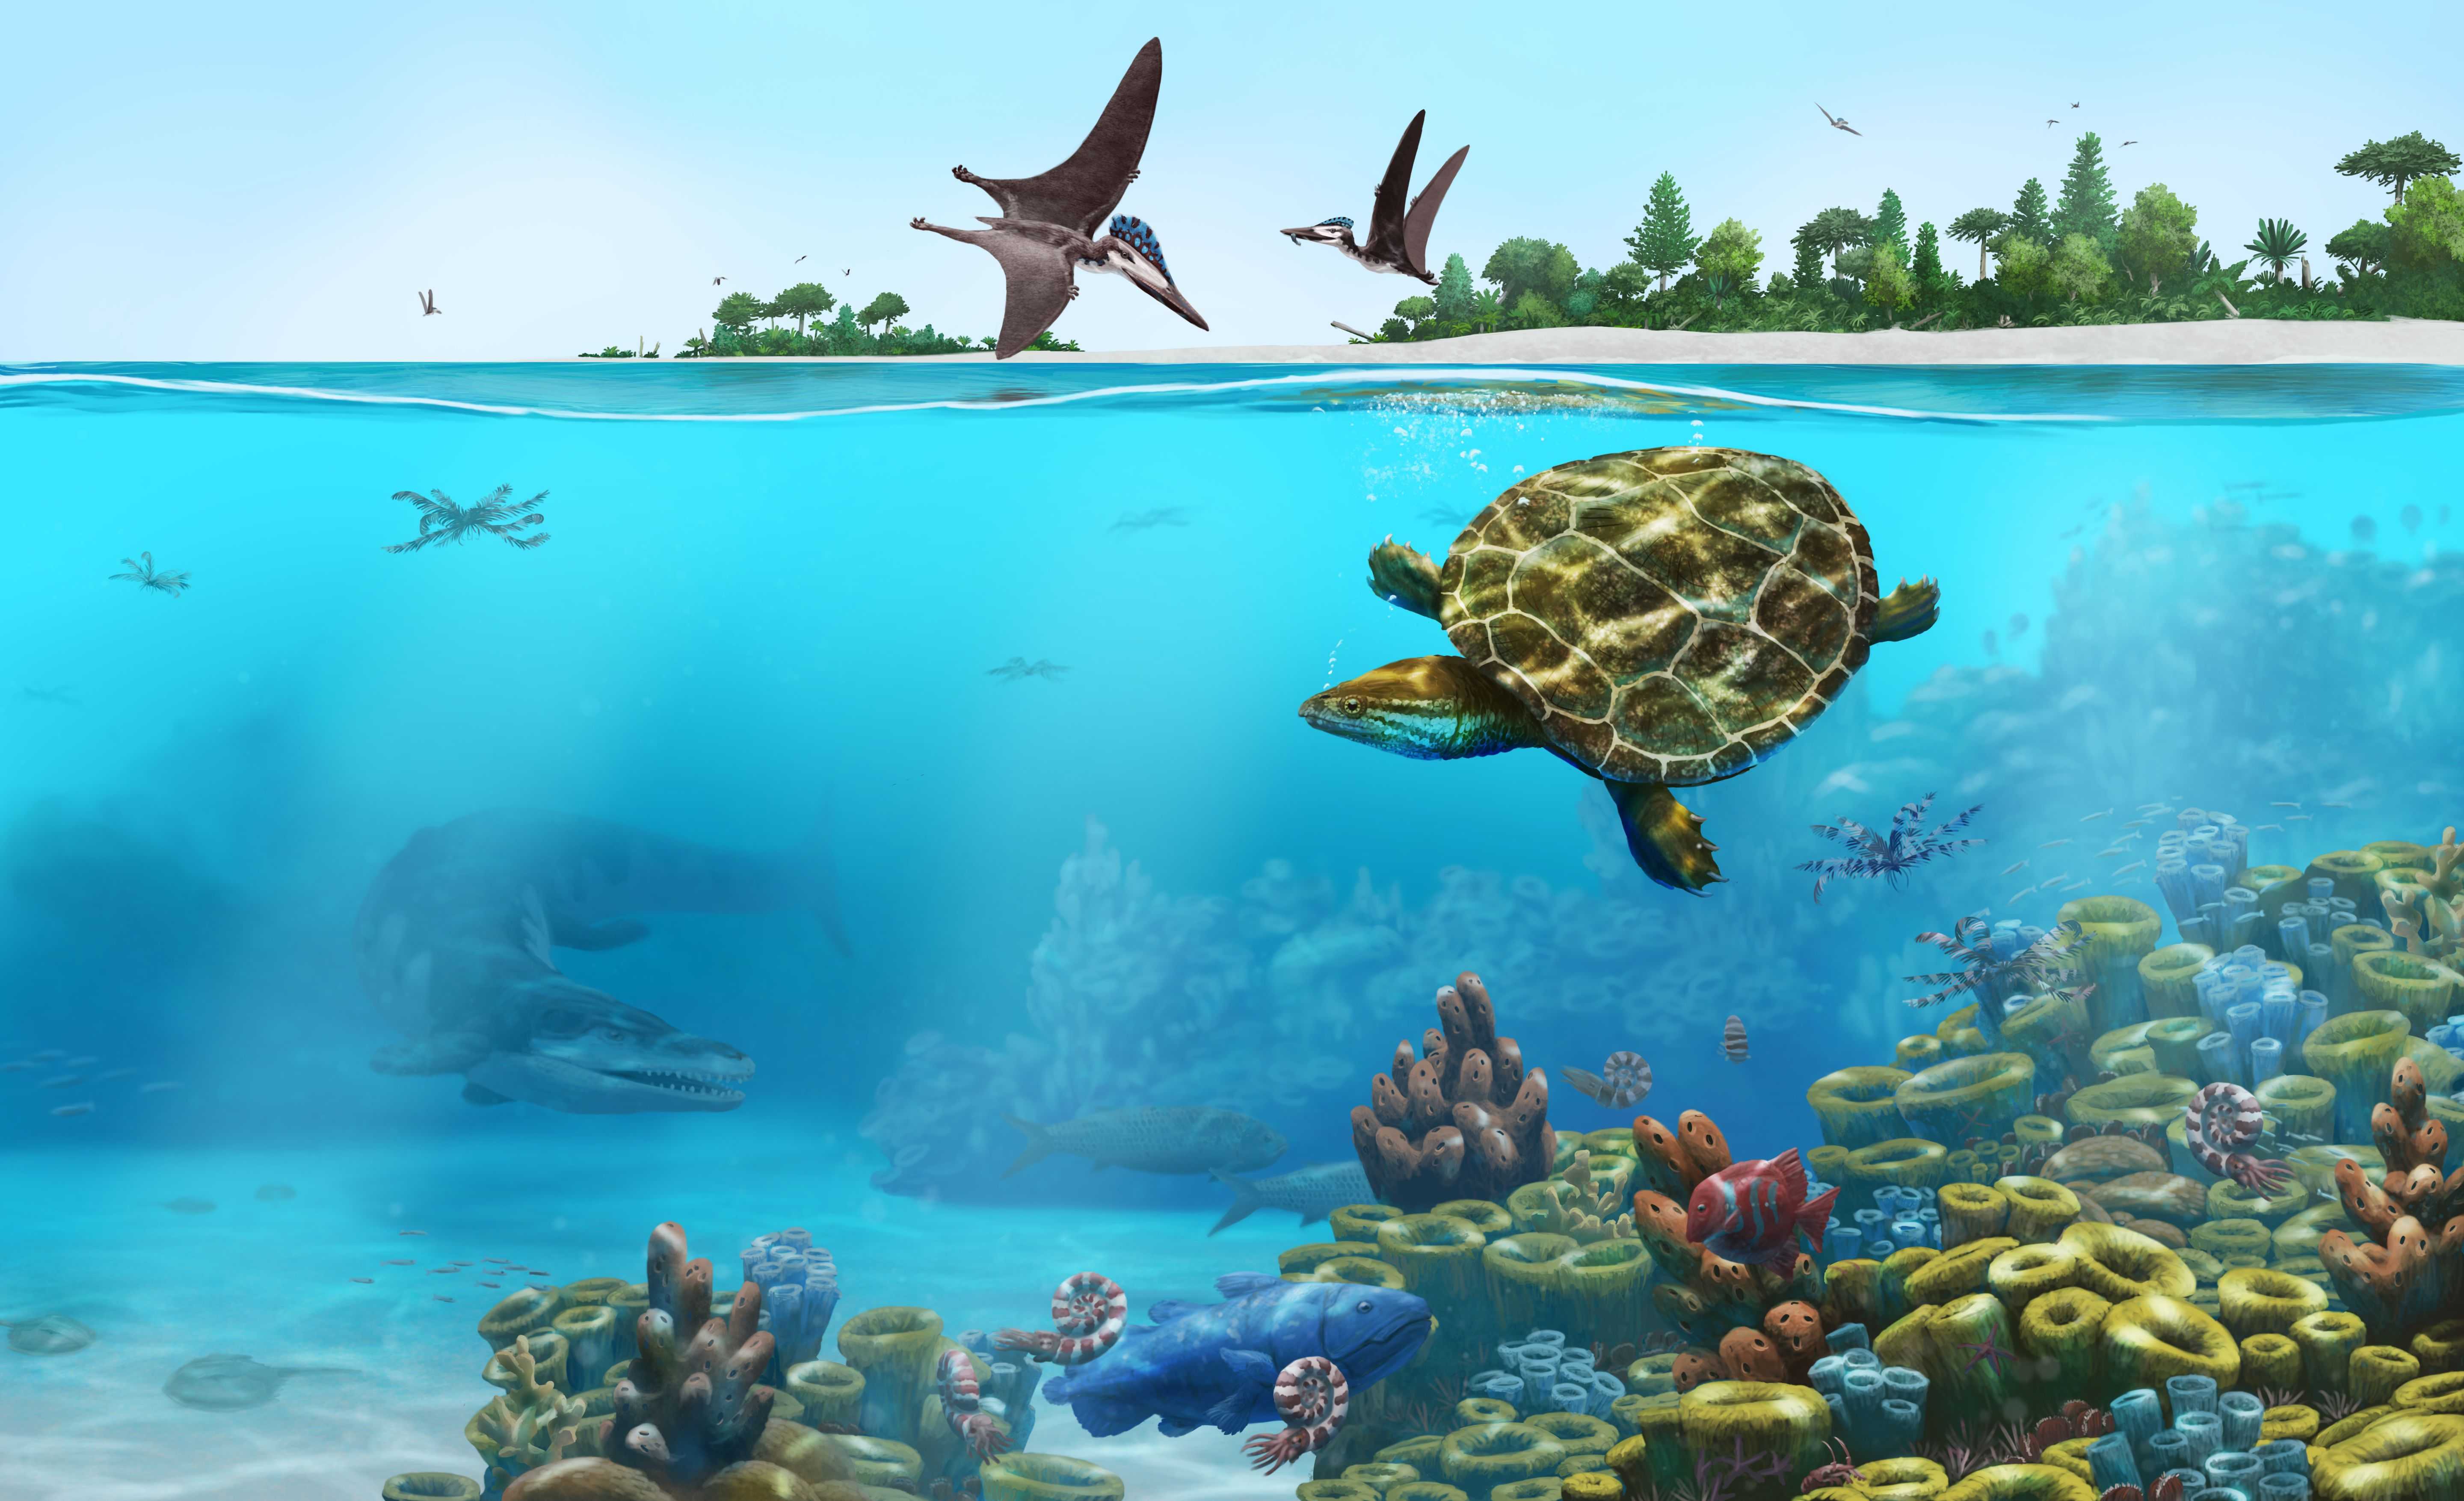 Палеонтологи описали отлично сохранившуюся черепаху из юрского периода